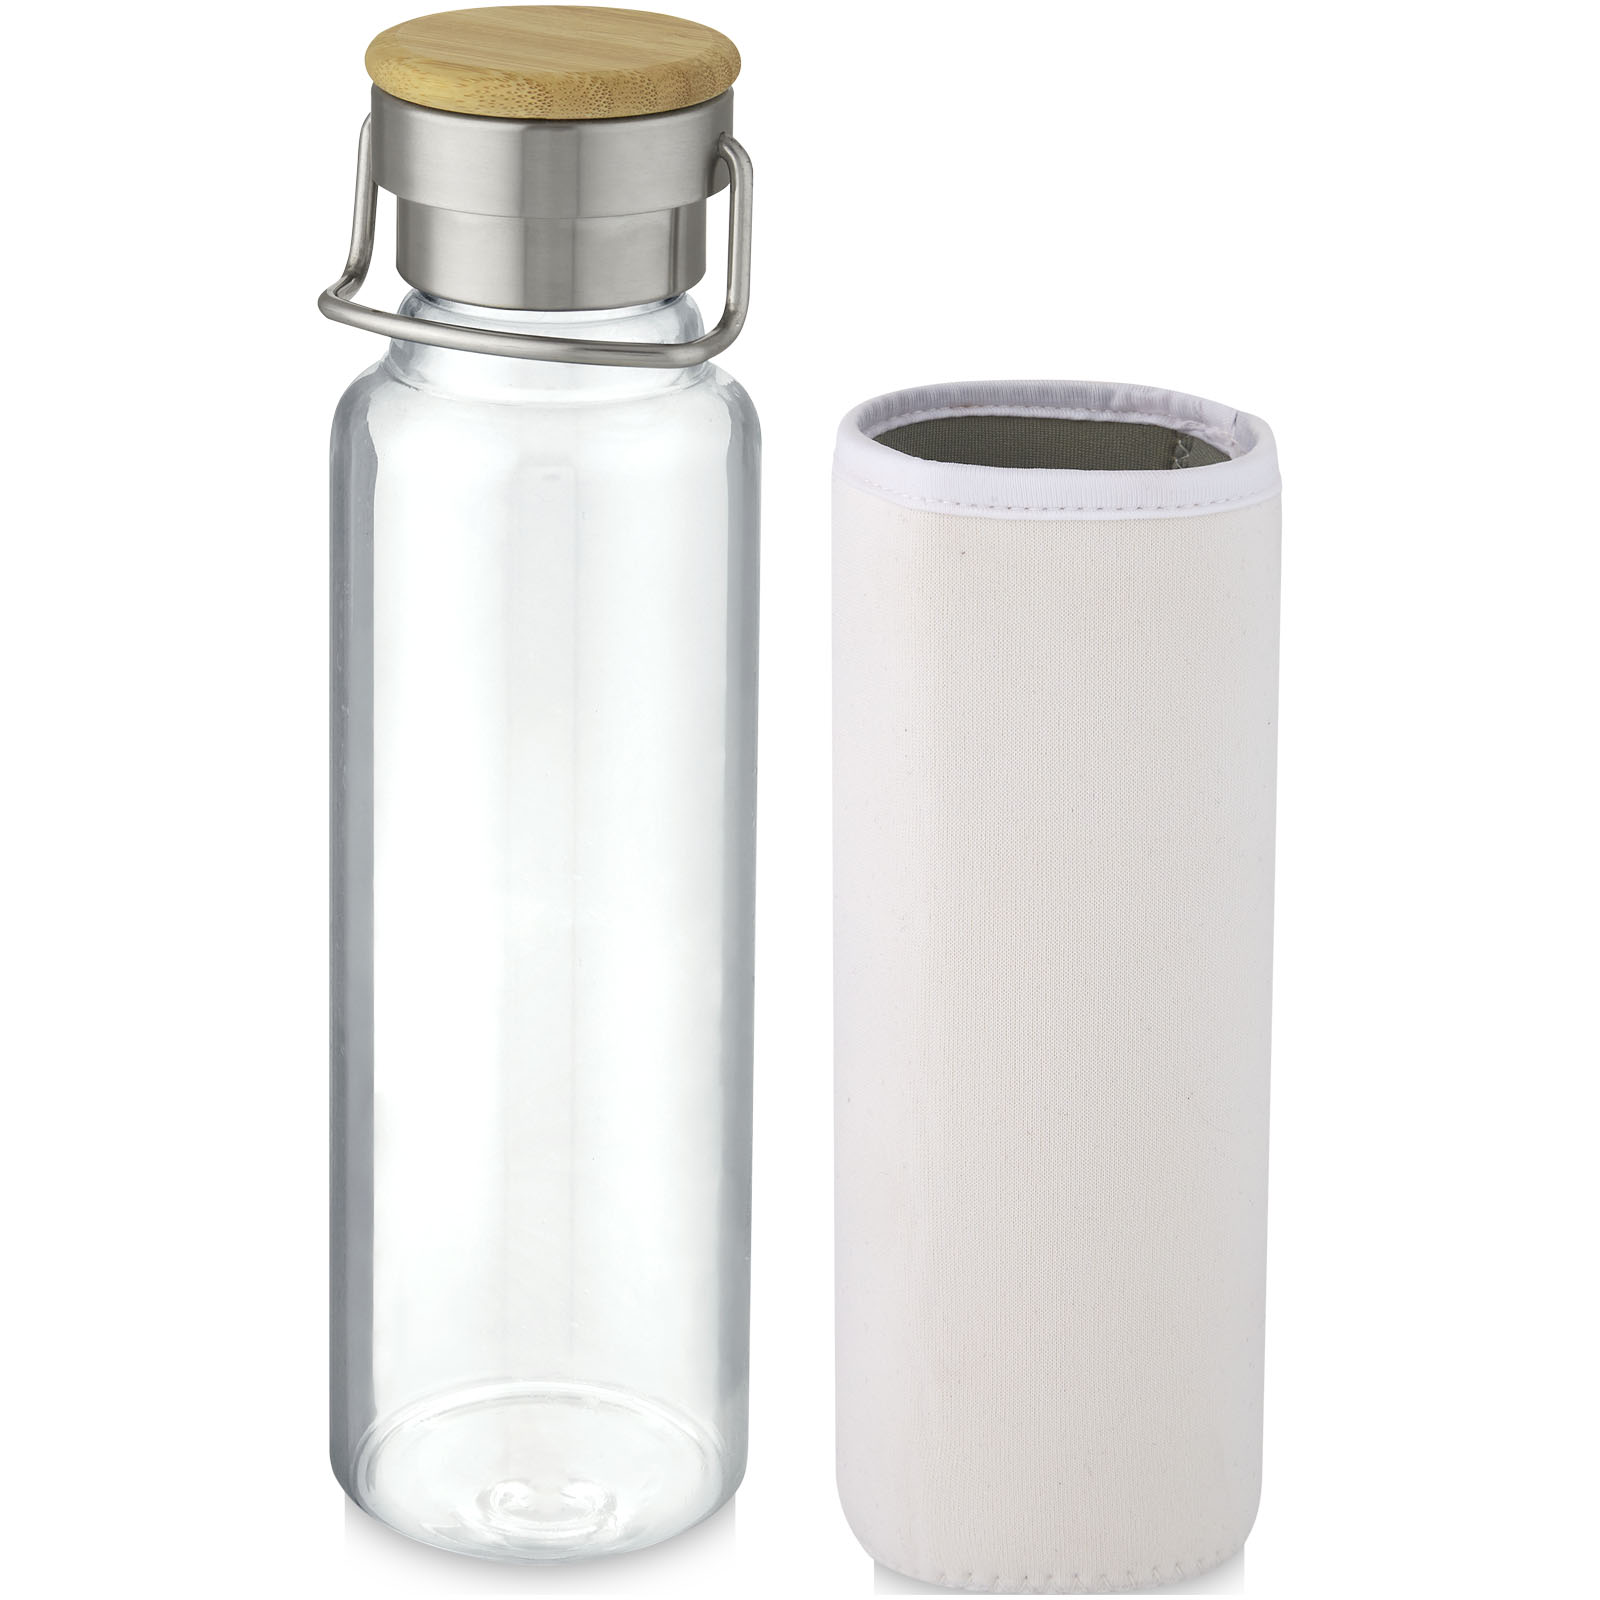 Bouteilles d'eau publicitaires - Bouteille Thor 660 ml en verre avec manchon en neoprene - 3